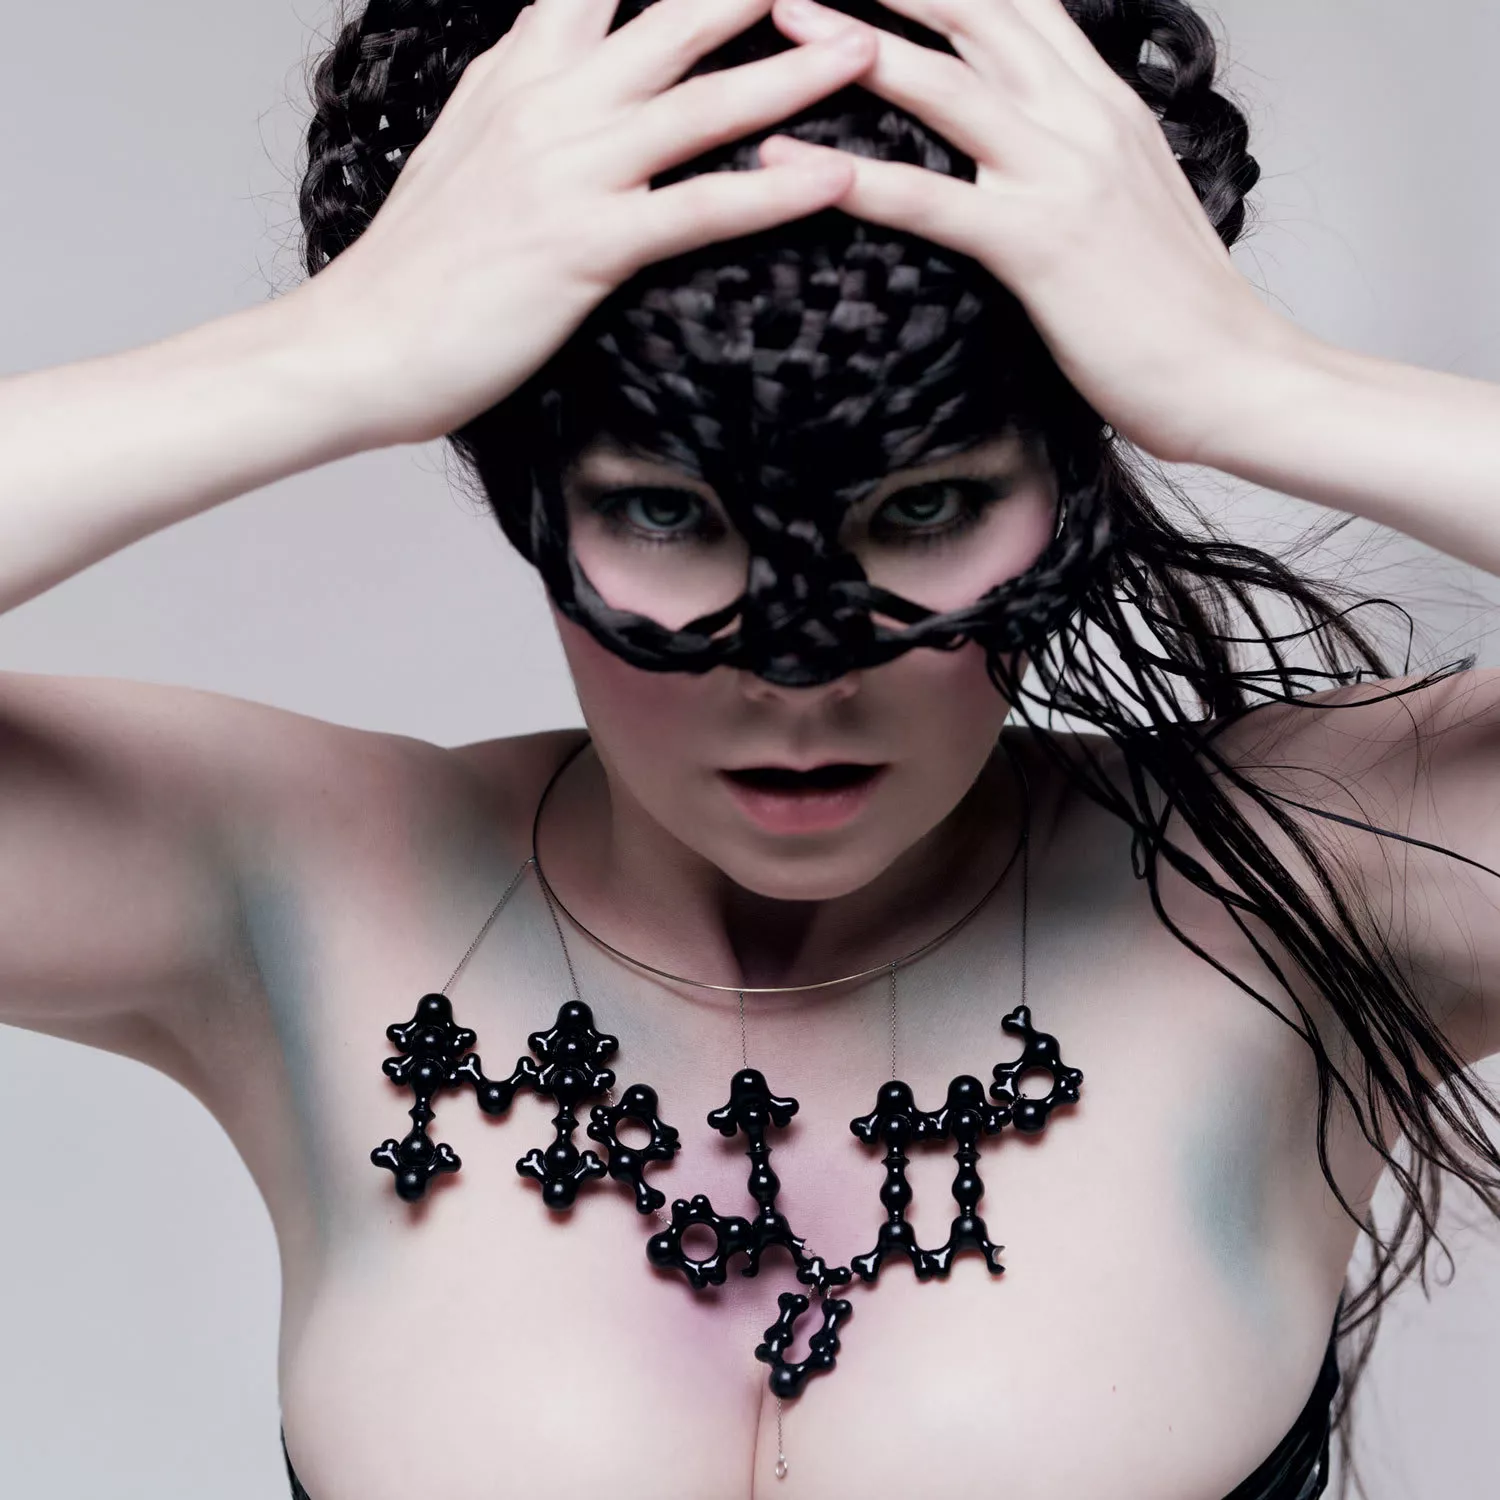 Björk fortæller detaljer om von Triers sexchikane